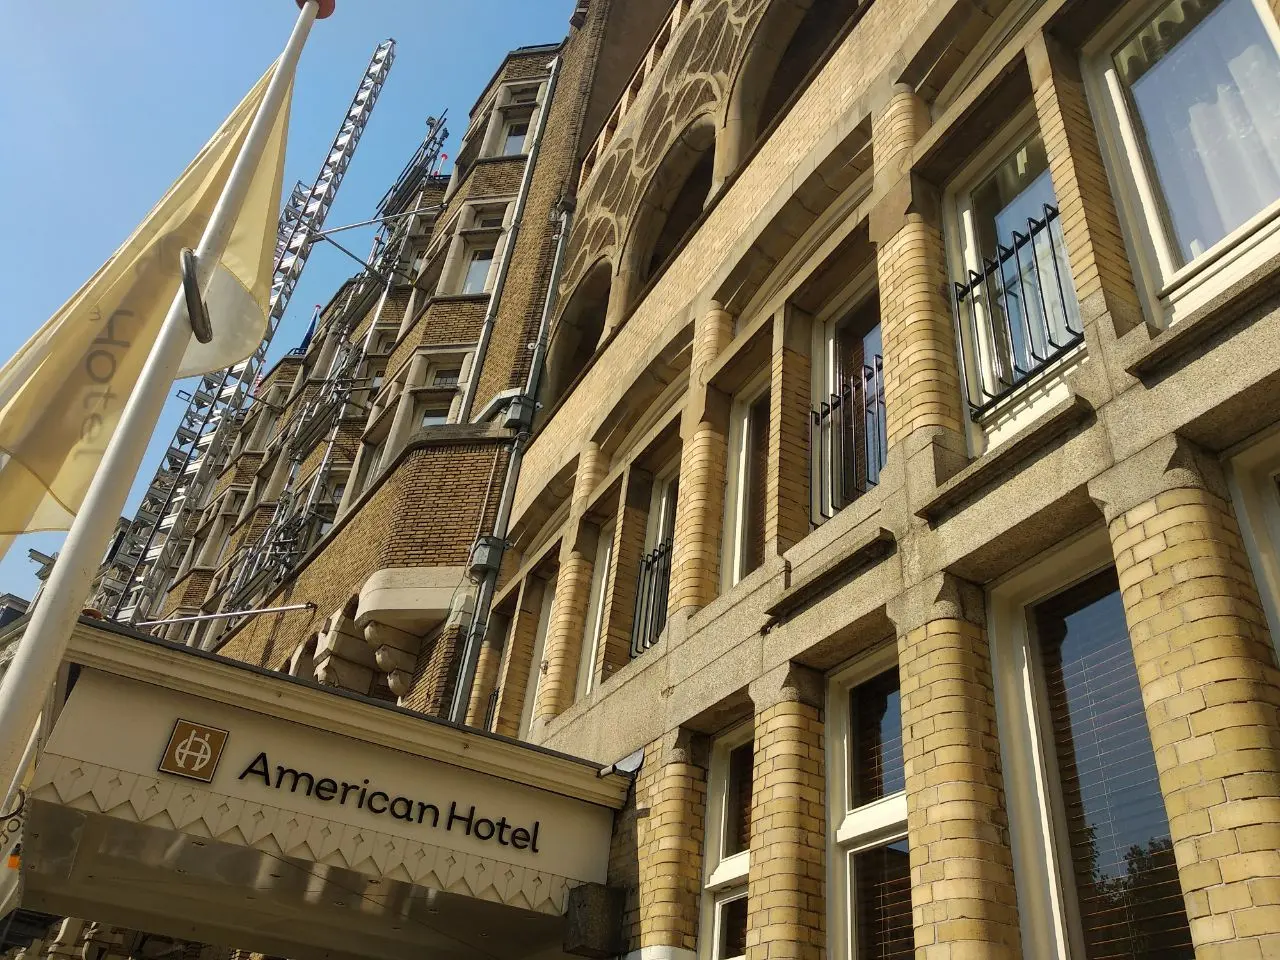 Lokasi bulan madu Mata Hari hingga markas Nazi, Hotel American Amsterdam yang dibangun pada 1880  punya sejarah yang panjang (Liputan6.com/Elin Yunita Kristanti)